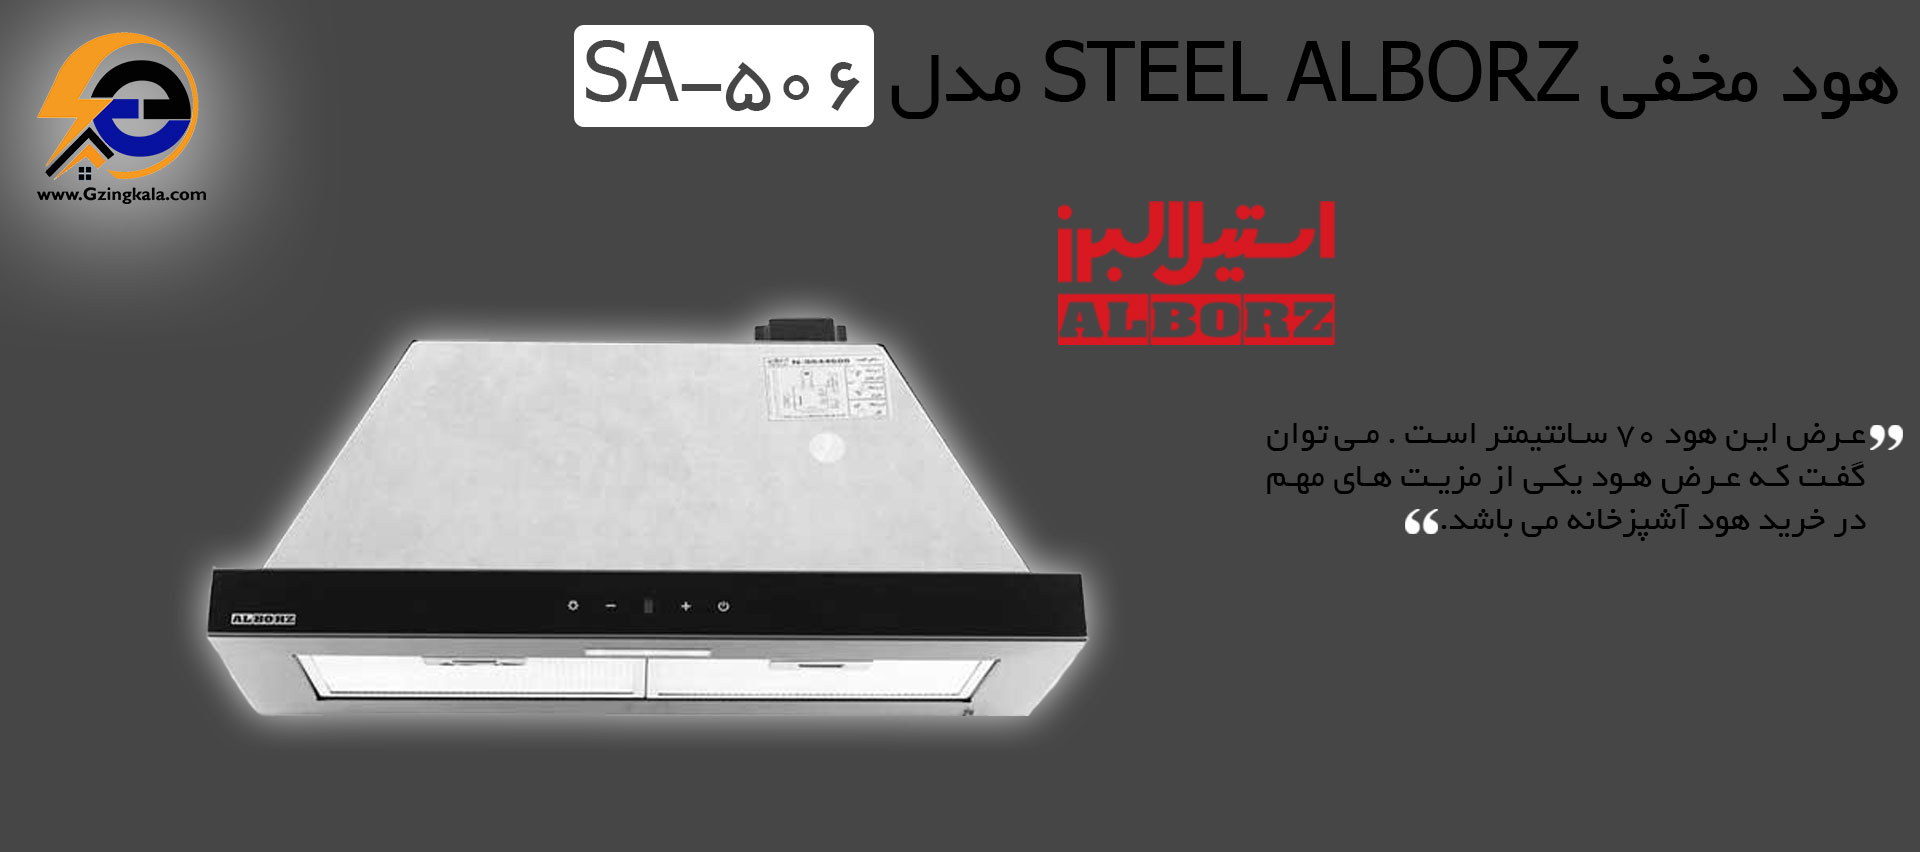 هود مخفی Steel alborz مدل SA-506